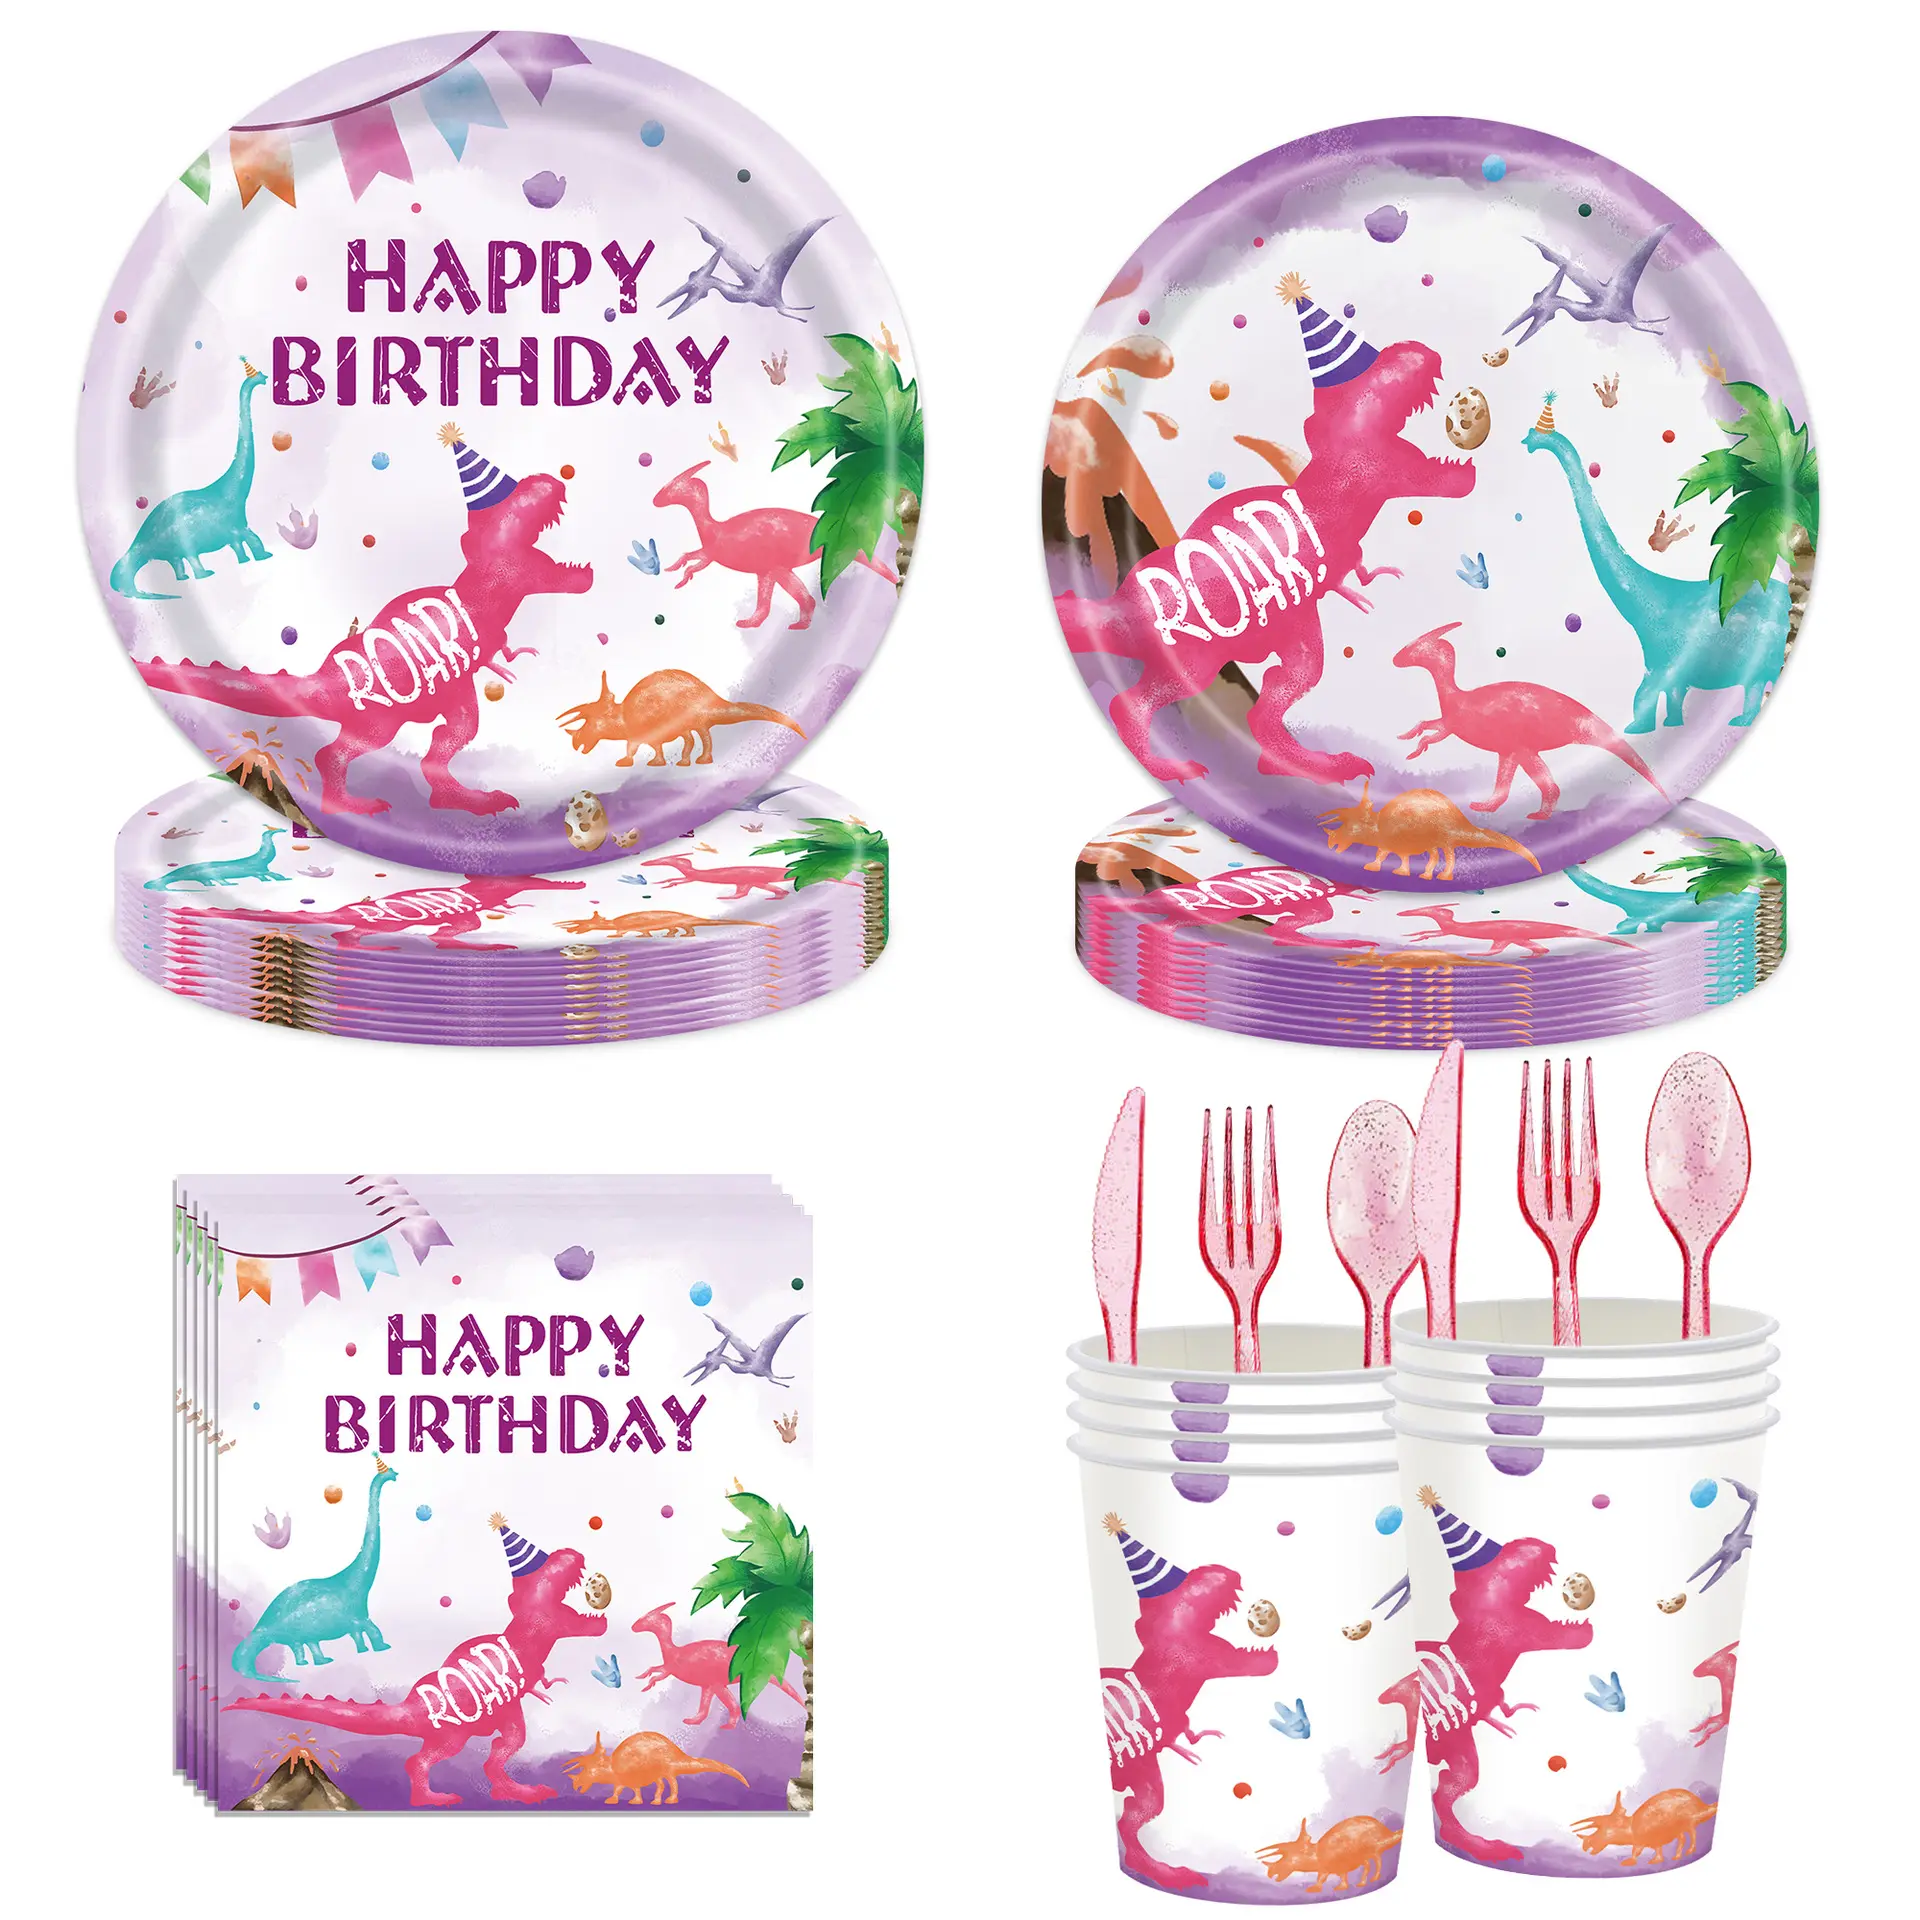 DAMAI Dinosaurier Party Papp teller Geschirr Sets Kid Birthday Party Einweg Teller Cup Party Supplies